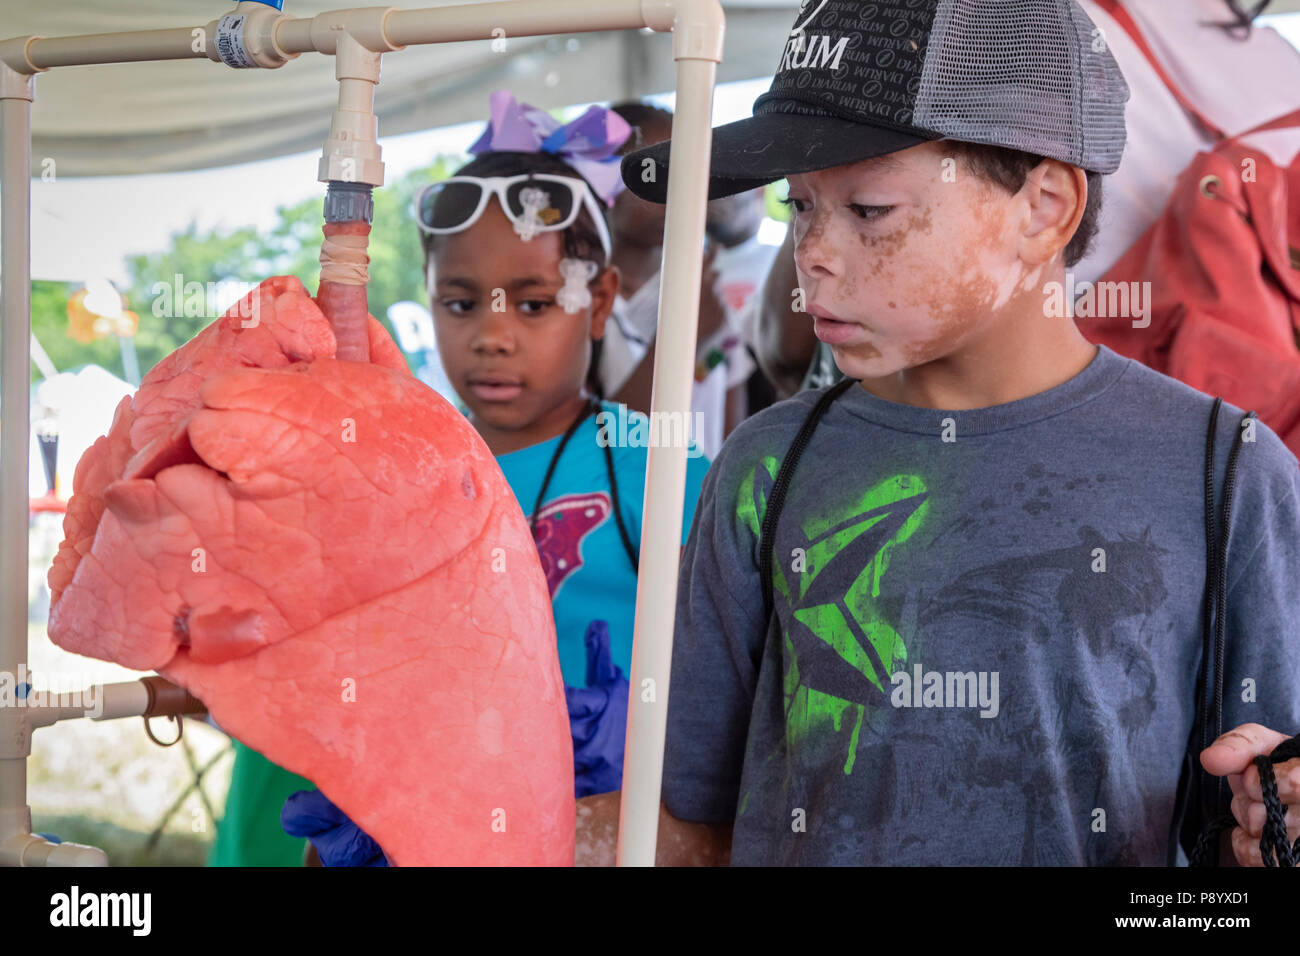 Detroit, Michigan - Kinder untersuchen Sie ein Schwein Lungenkrebs bei der Metro Detroit Tag der Jugend. Tausende von Kindern im Alter von 8-15 die jährliche Veranstaltung auf Belle Isle, w teilnehmen Stockfoto